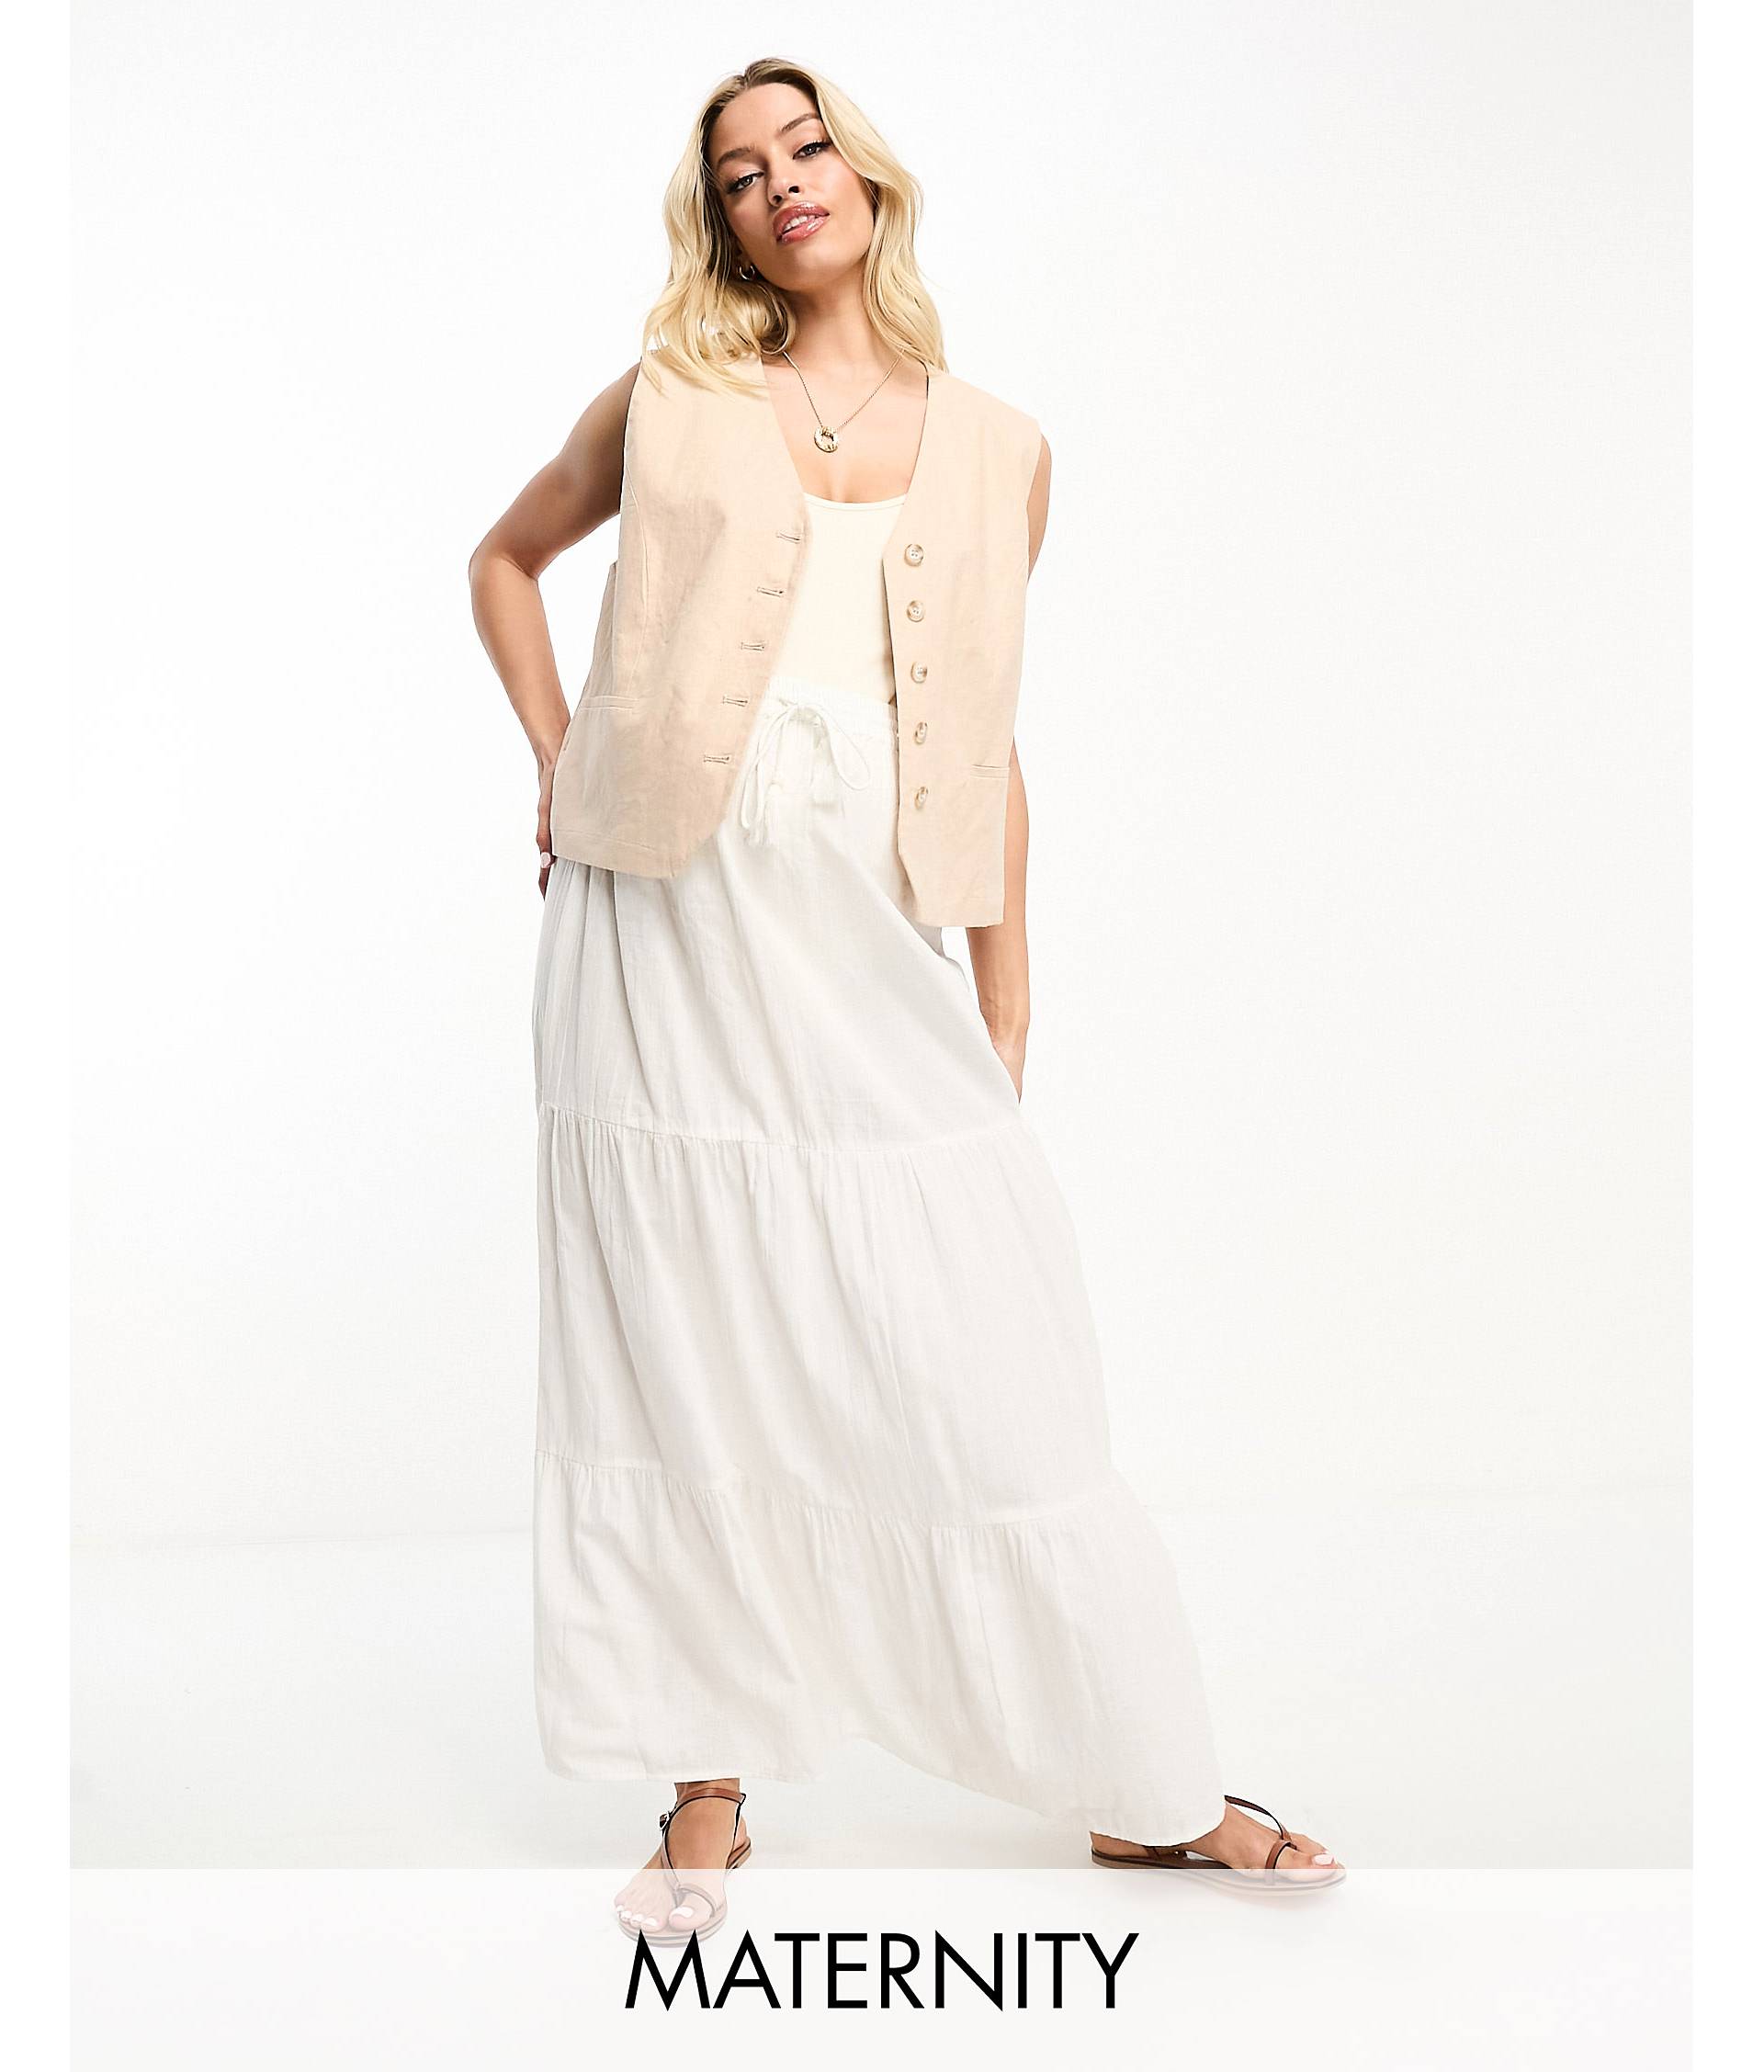 Белая юбка макси с завязками на талии Vero Moda Maternity кроссовки prima moda esilla white